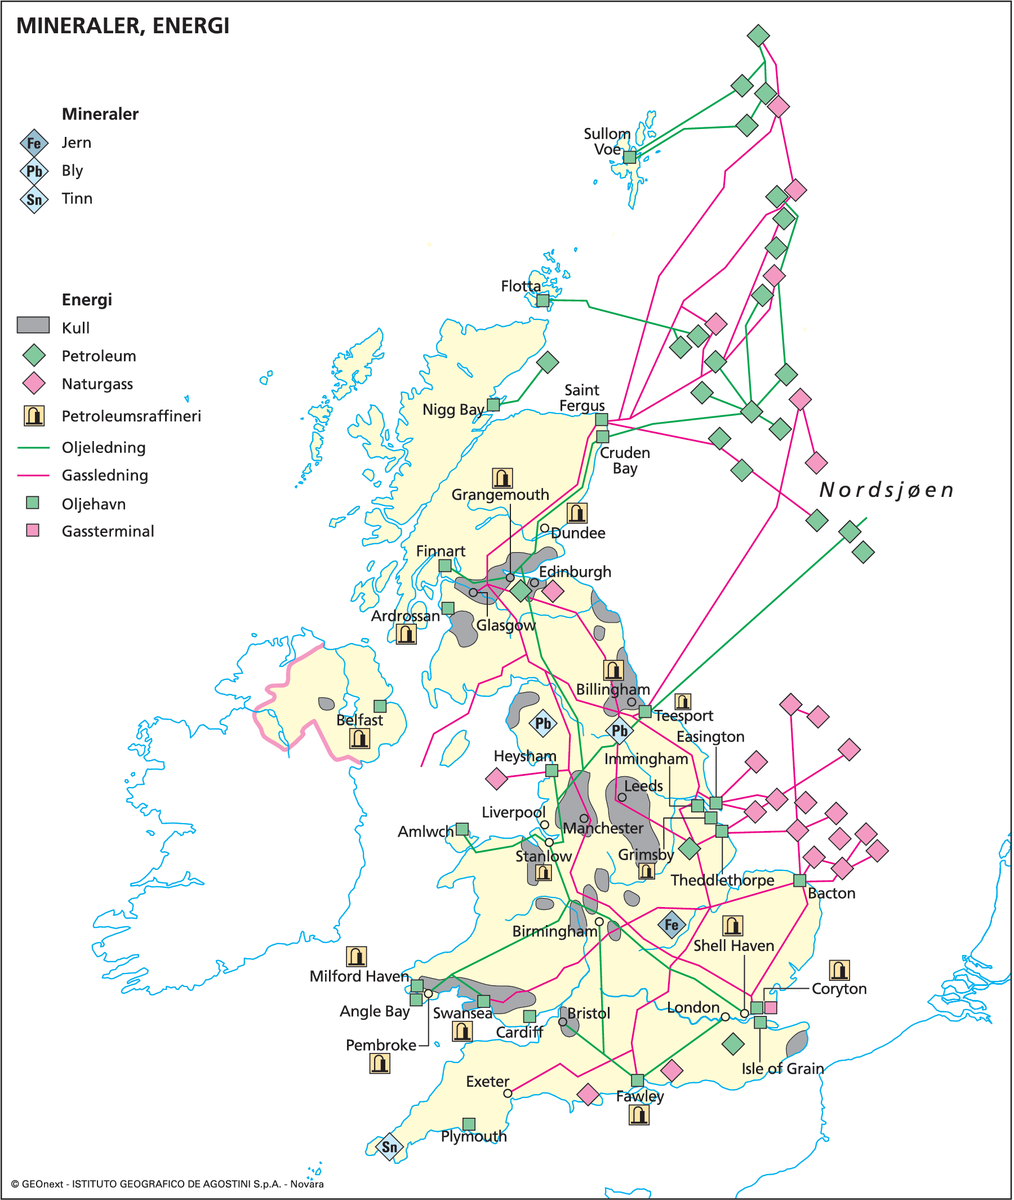 Storbritannia og Nord-Irland (Kart: Mineraler og energi)